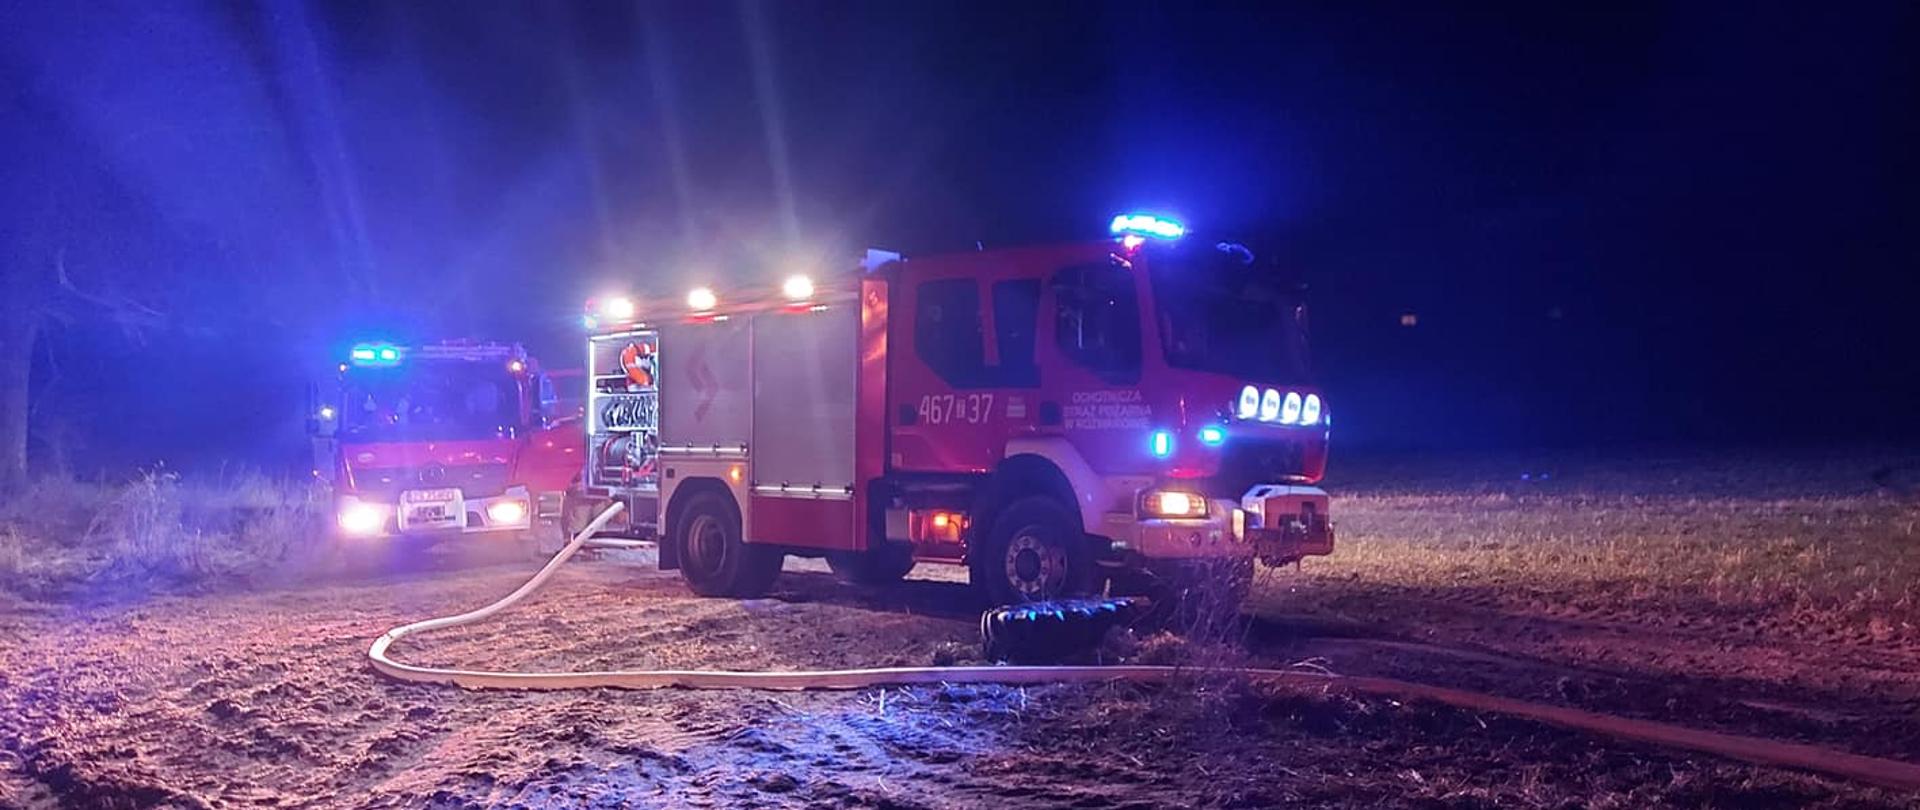 Zdjęcie przedstawia dwa pojazdy ciężarowe straży pożarnej na polu w porze nocnej.do jednego podłączony jest wąż strażacki.Oba wozy maja włączone sygnały.